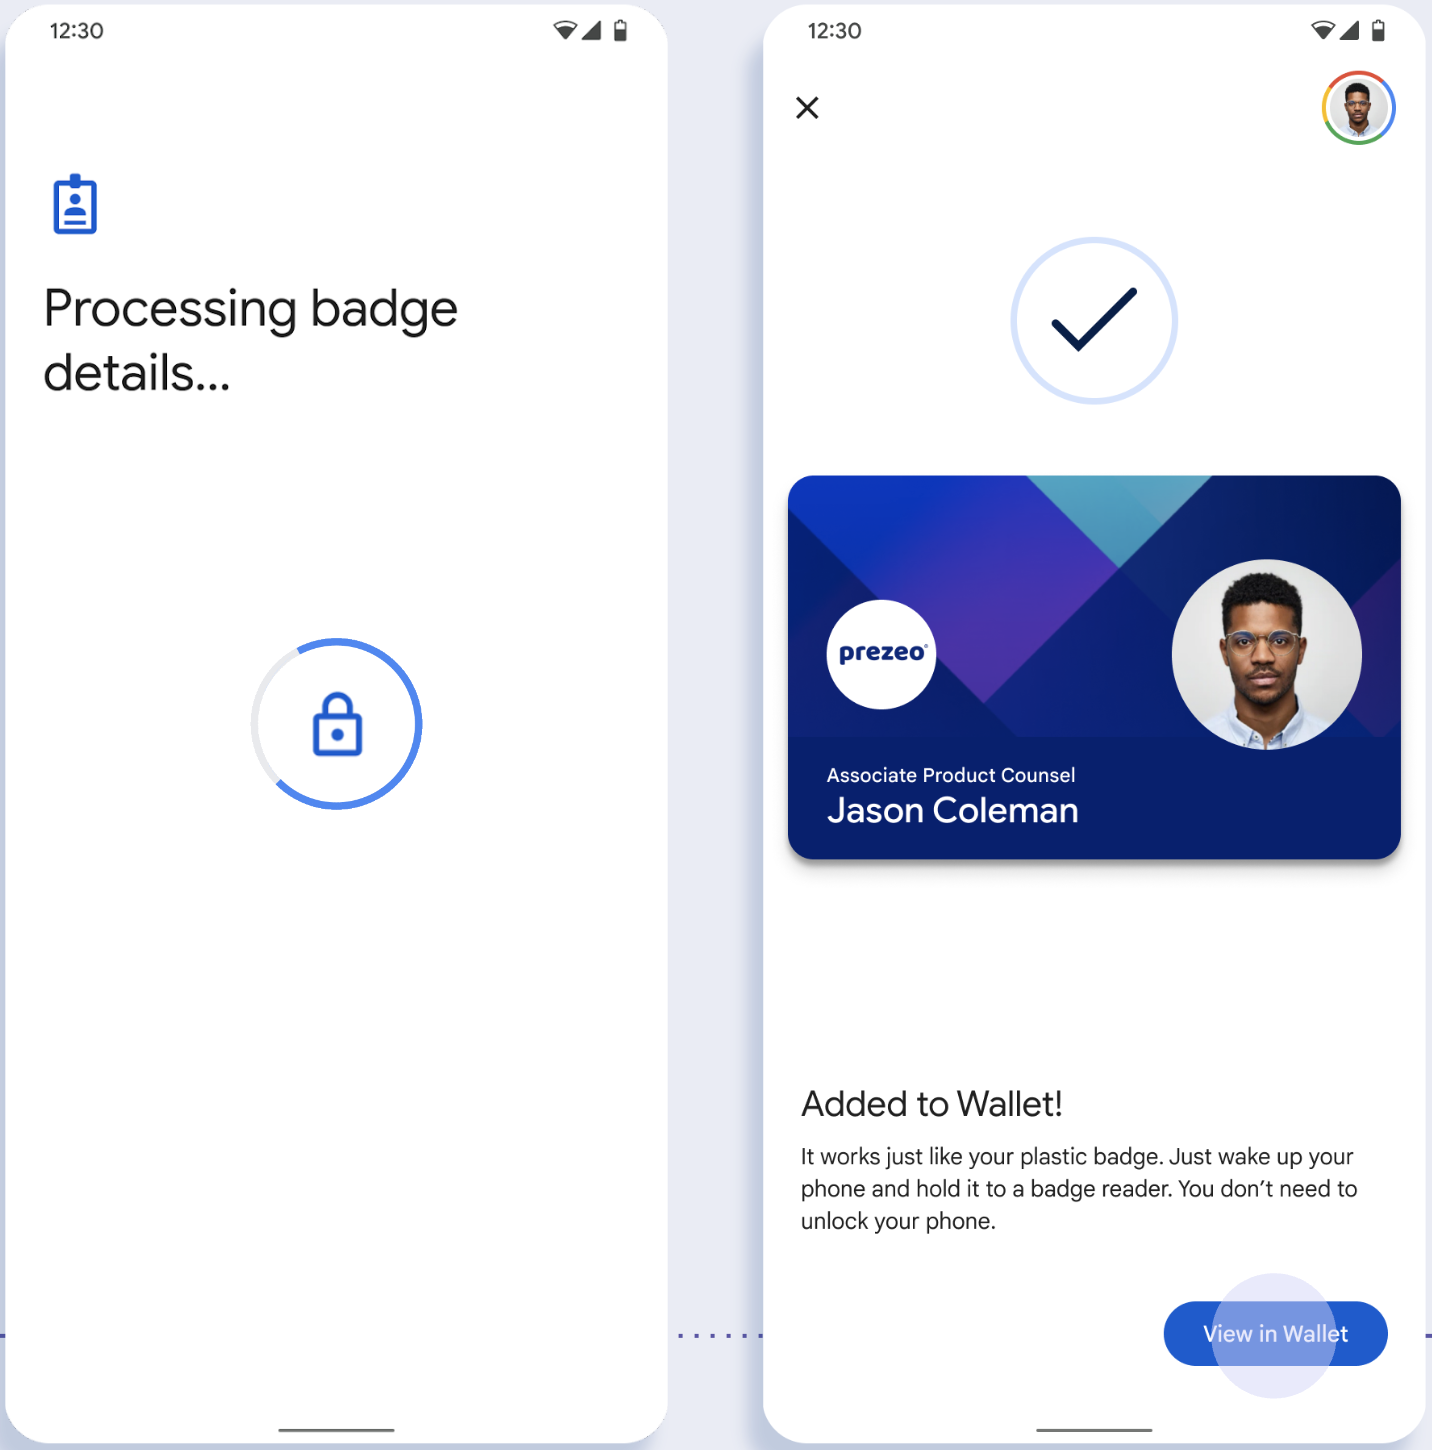 Auf dem ersten Bildschirm speichert die App die ID auf dem Smartphone des Nutzers. Auf dem zweiten Bildschirm wird die ID gespeichert und eine Erfolgsmeldung wird angezeigt.